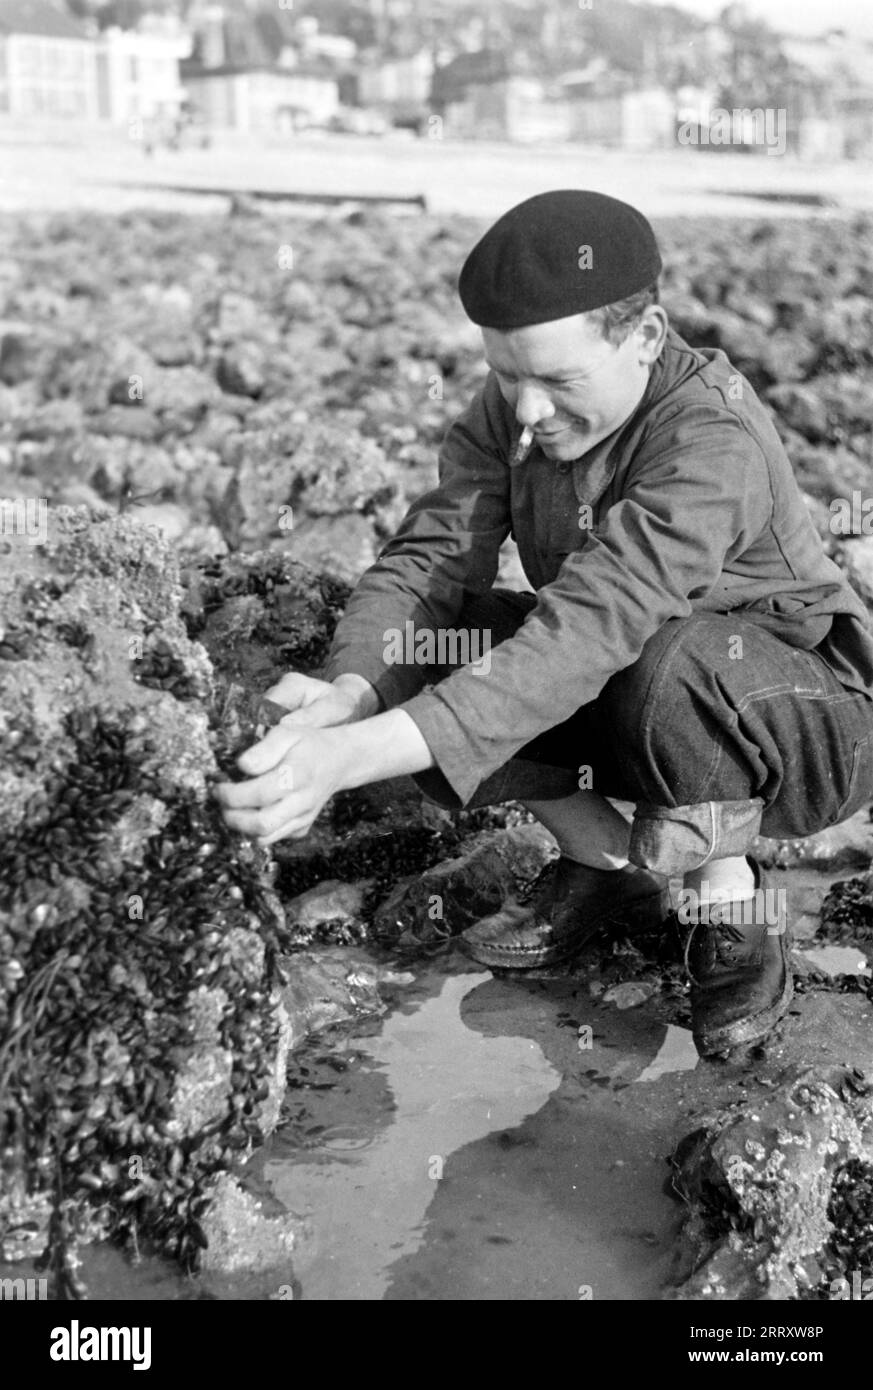 Muschelernter am Strand von le Havre, 1940. Raccoglitrice di conchiglie sulla spiaggia di le Havre, 1940. Foto Stock